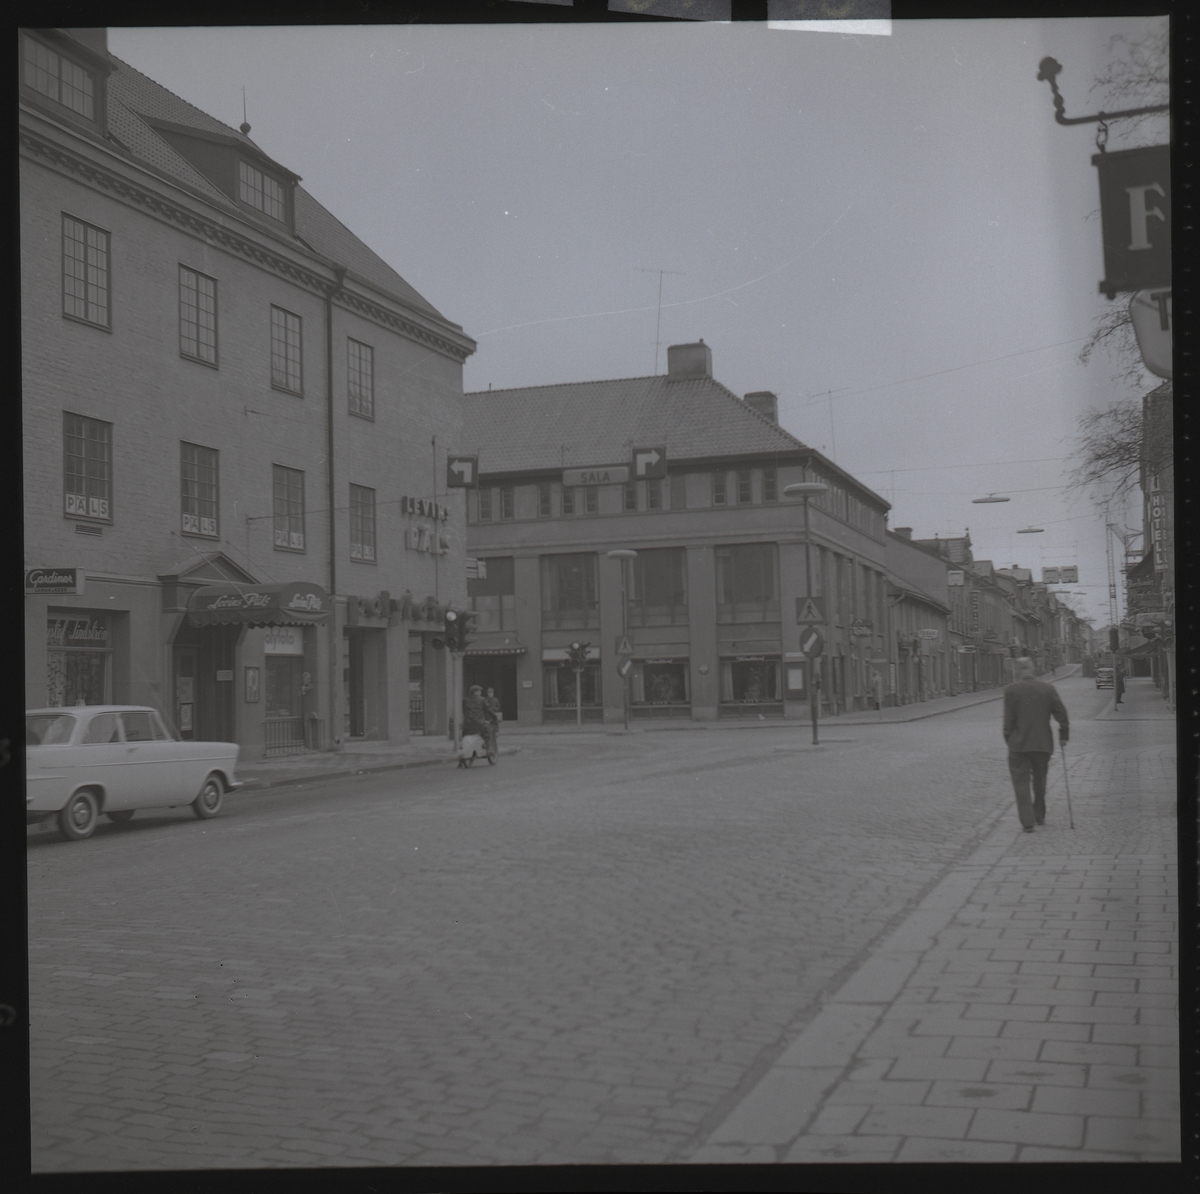 Korsningen Stora gatan/Kopparbergsvägen, Västerås.